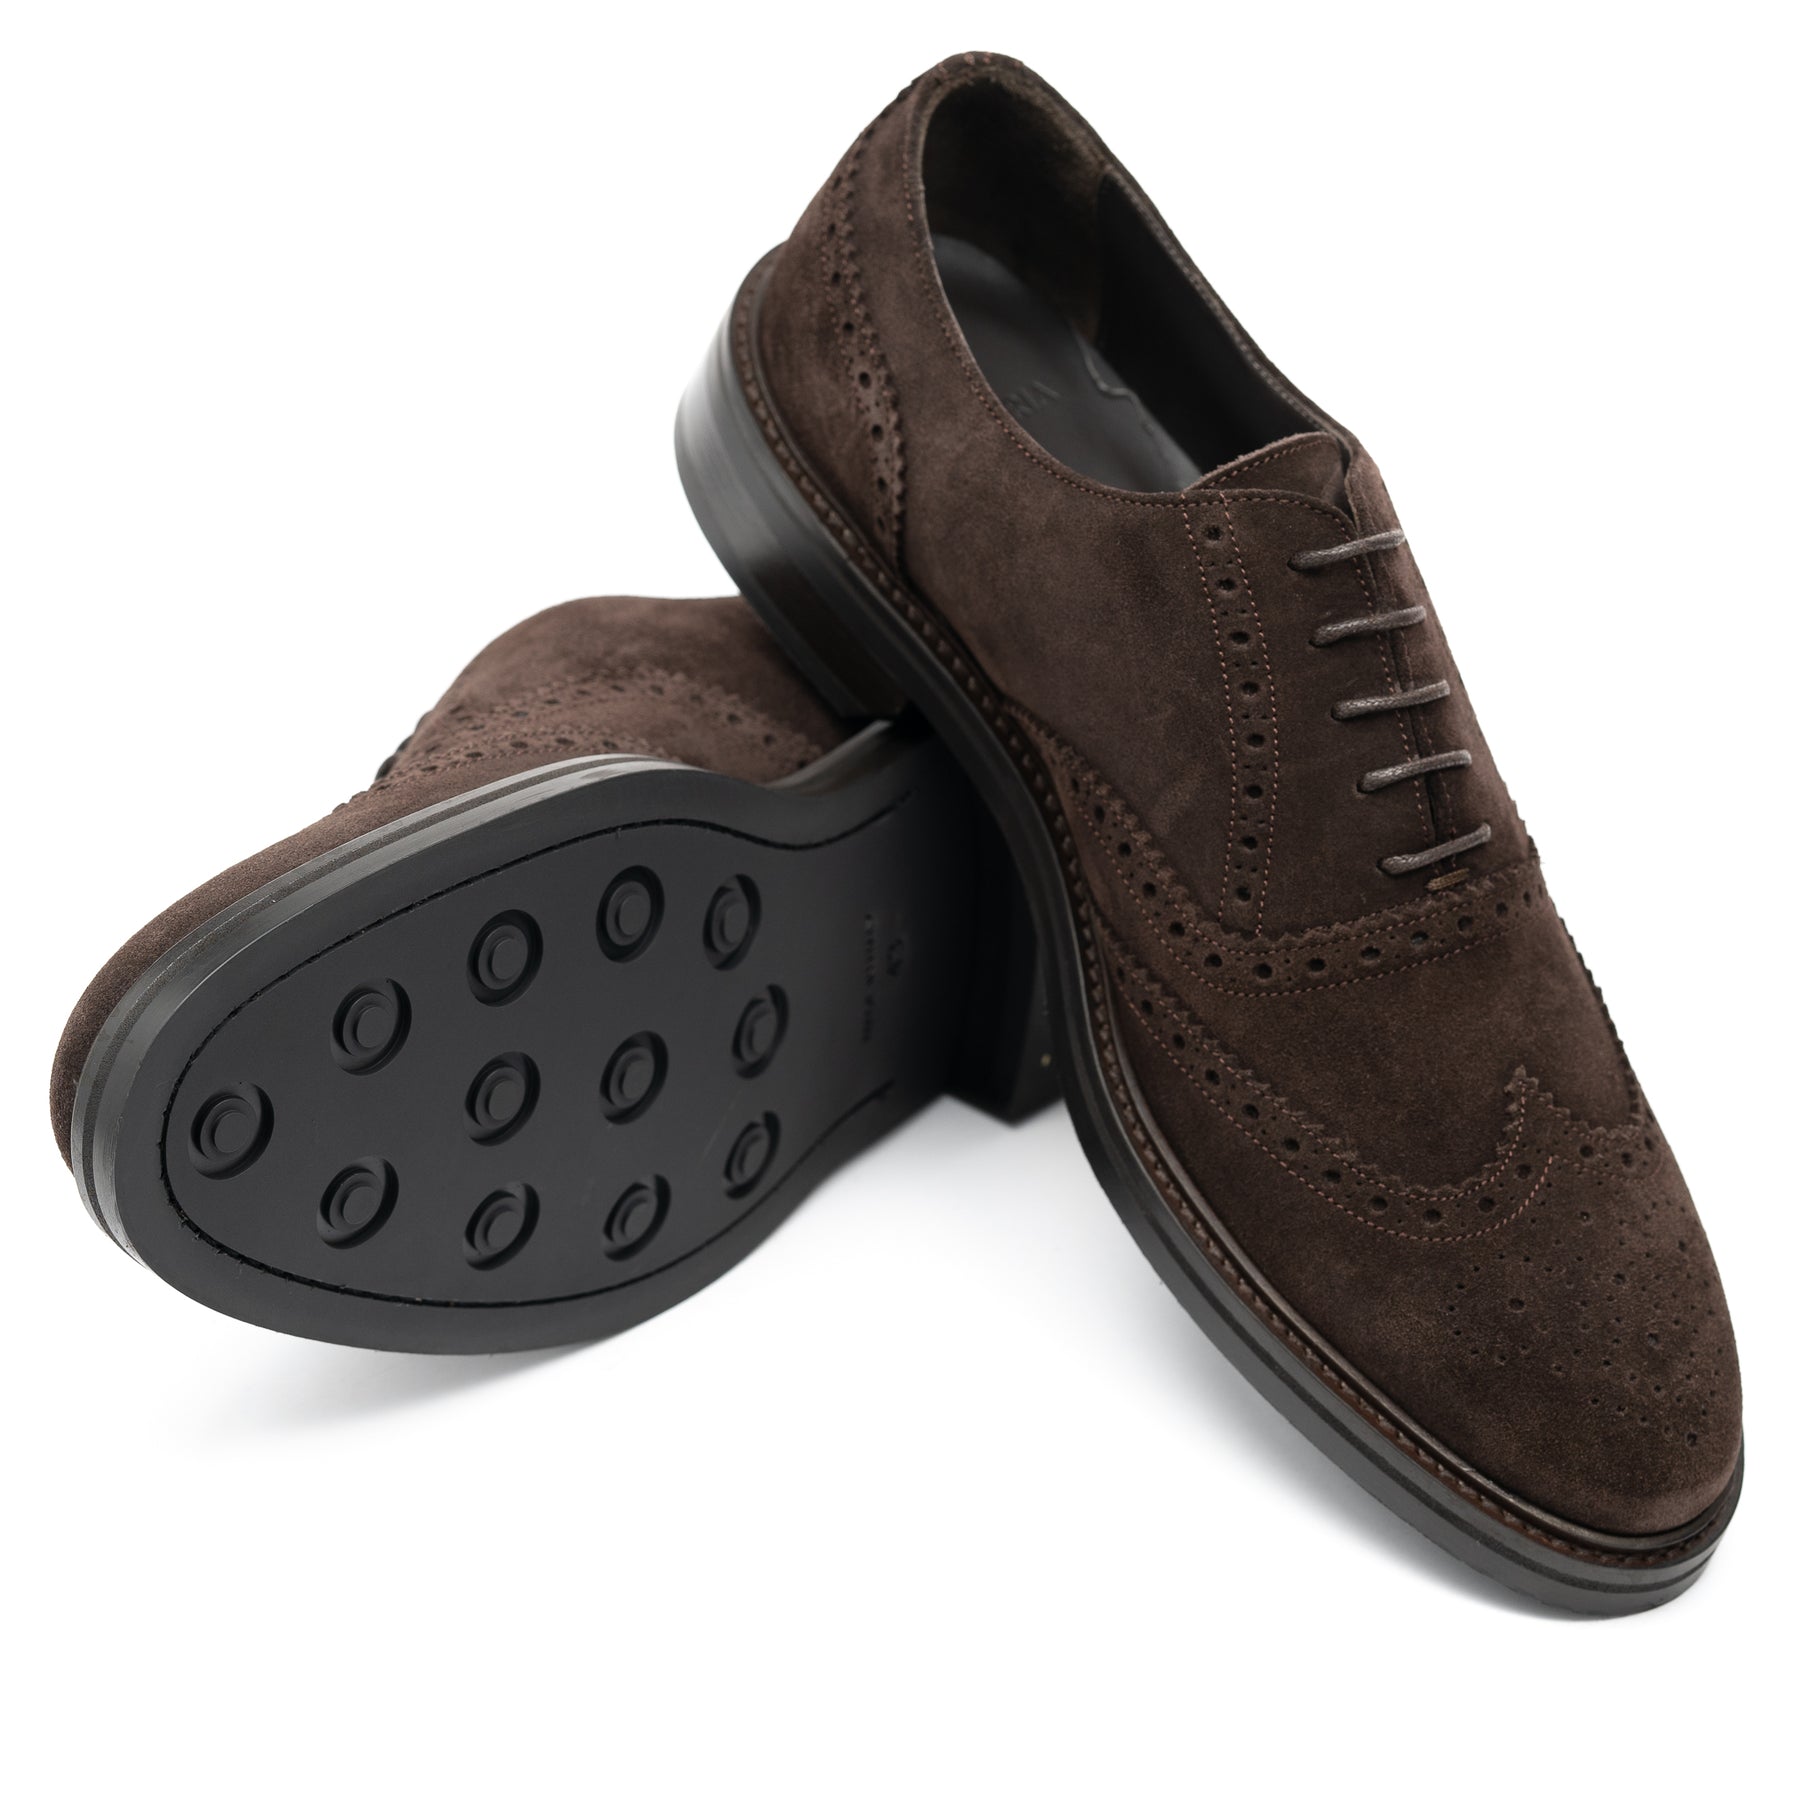 Kensington Suede Oxford Brogue Shoes | Brown